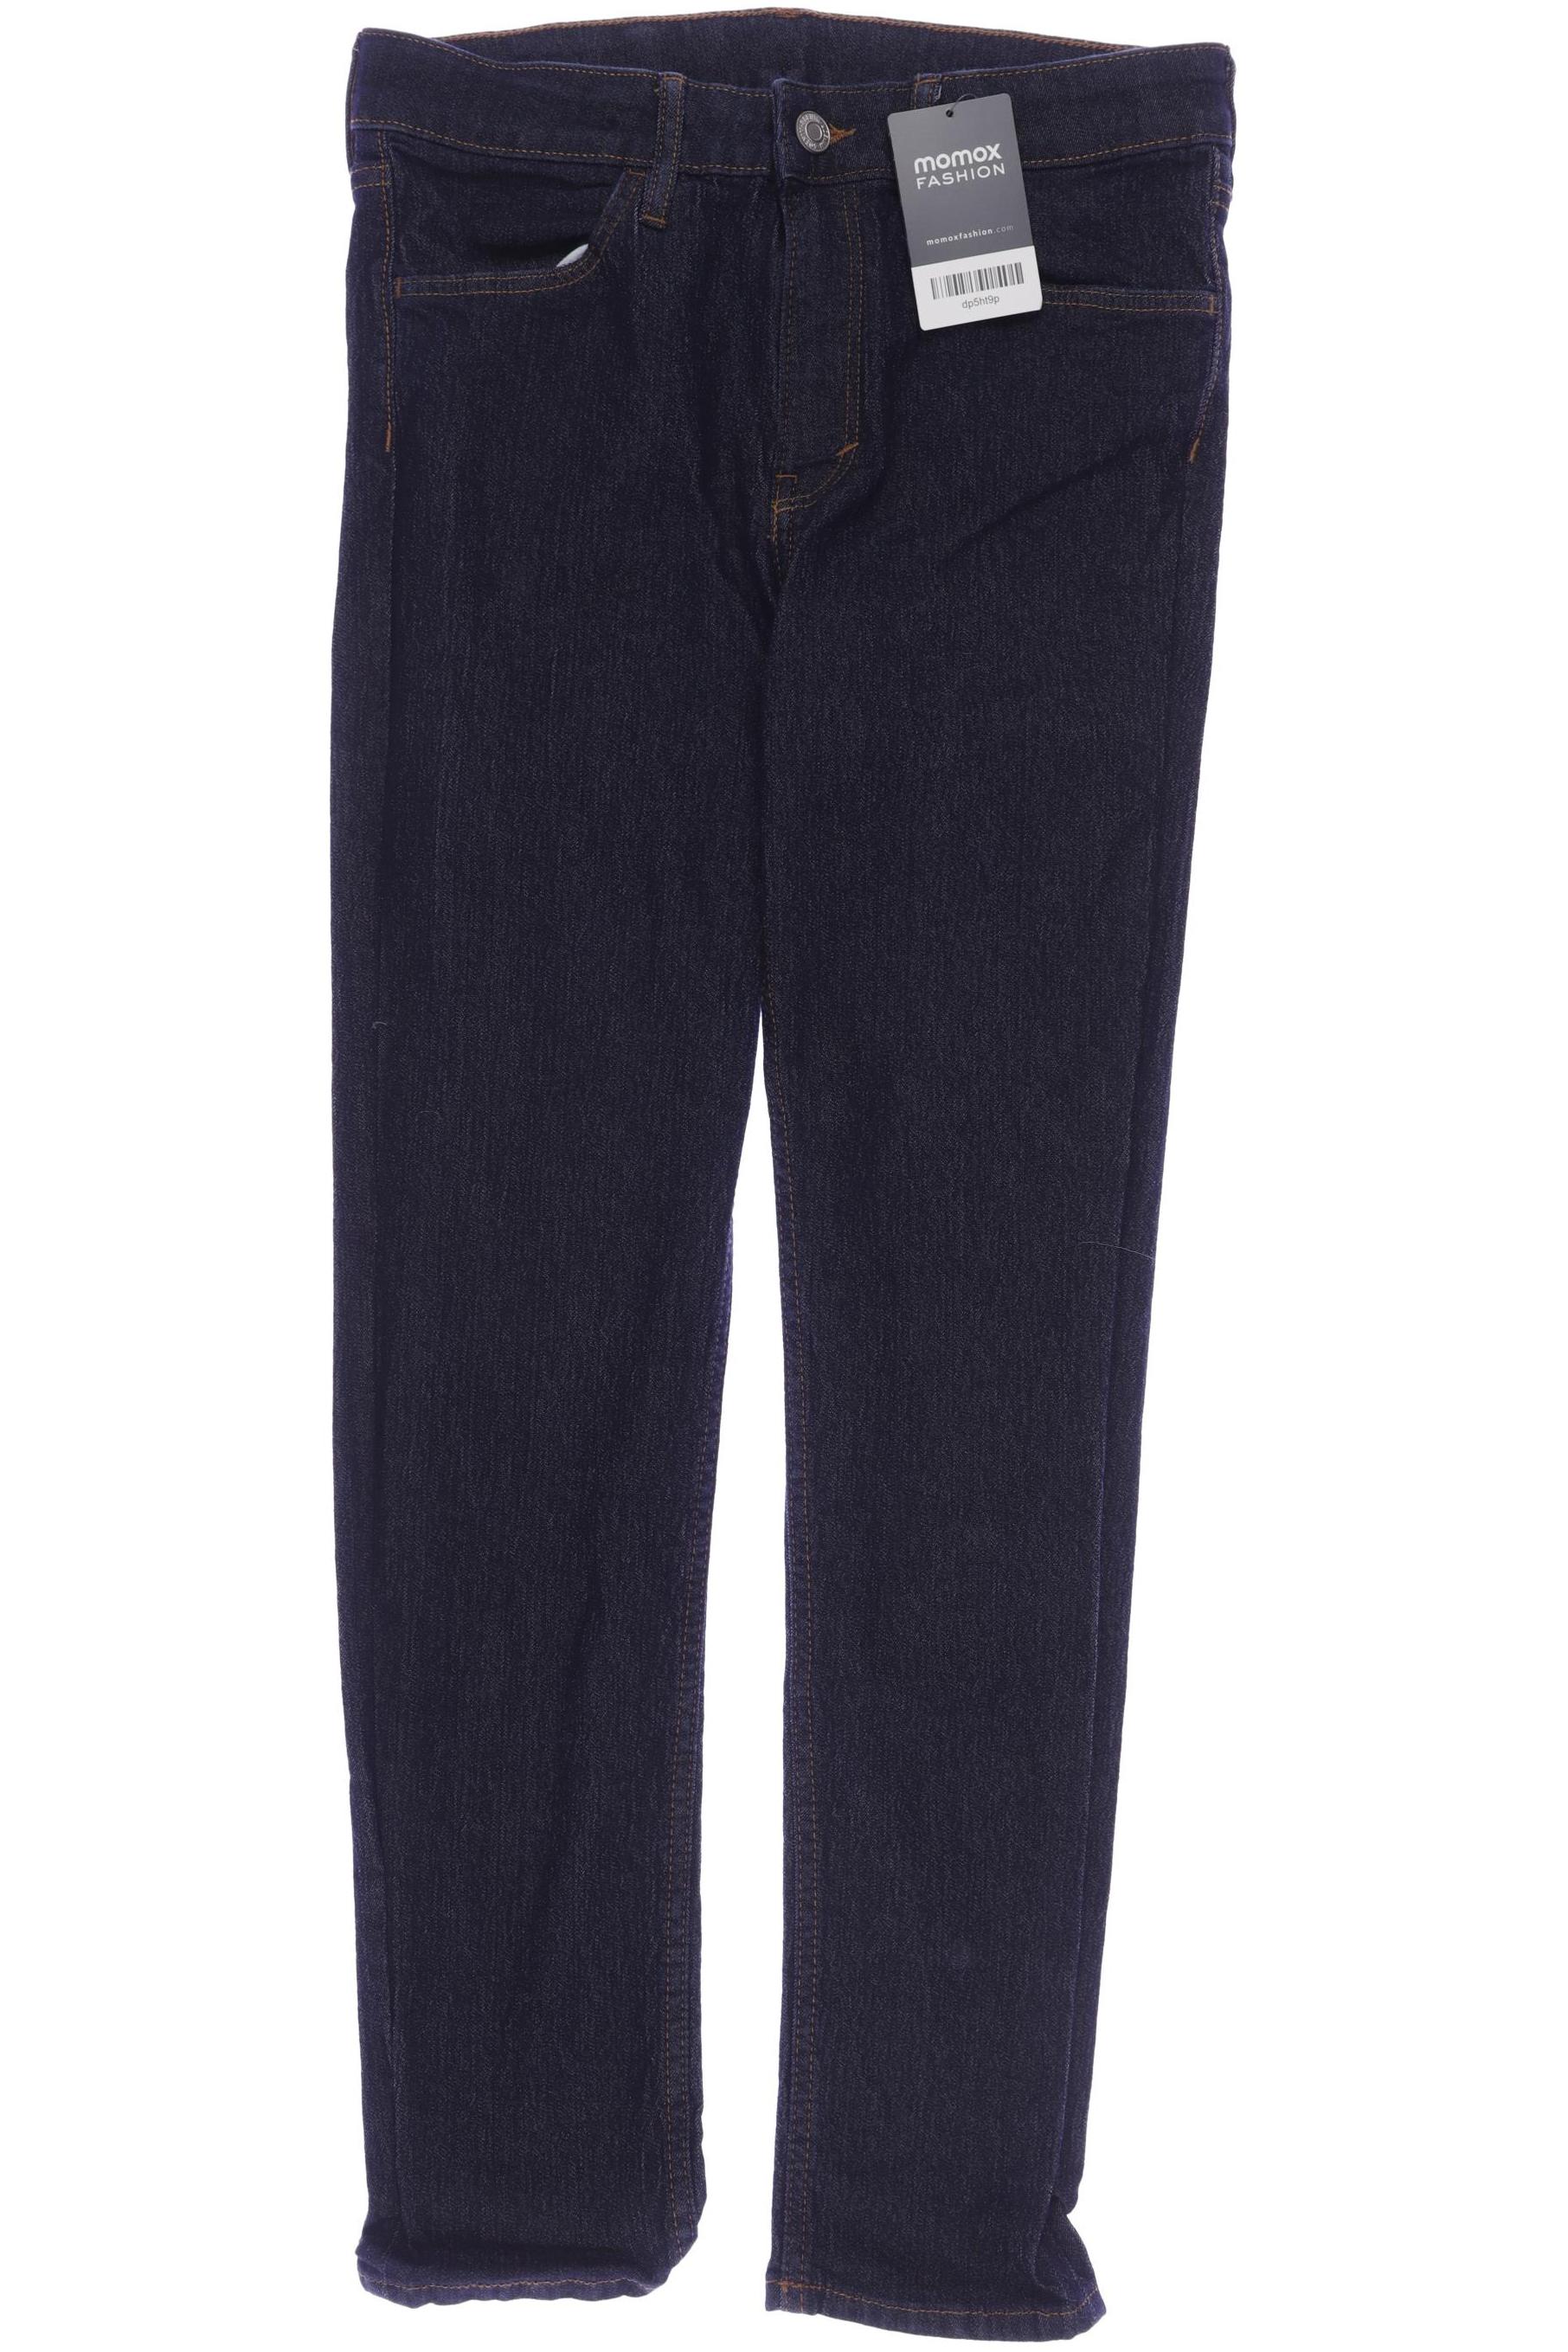 H&M Herren Jeans, marineblau, Gr. 158 von H&M